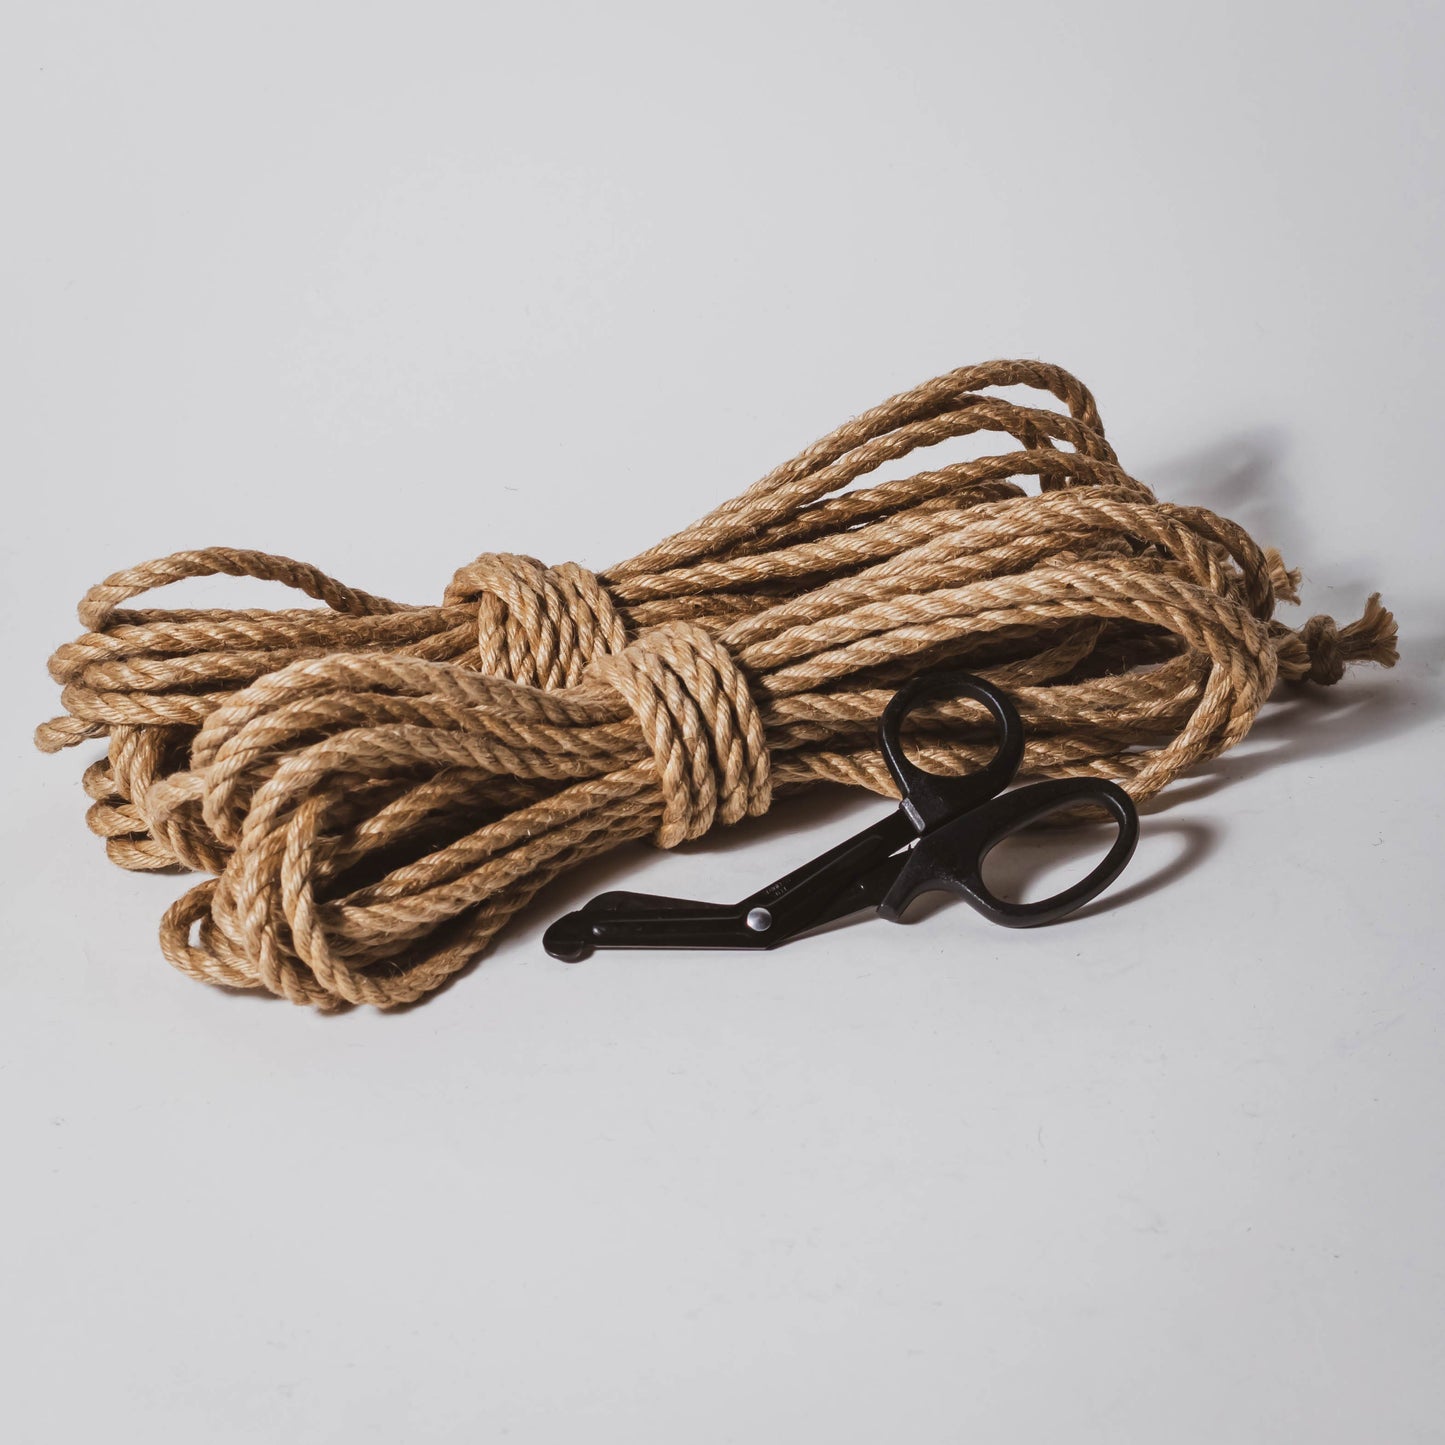 Untreated Rope – Anatomie Rope Shop, Jute Rope